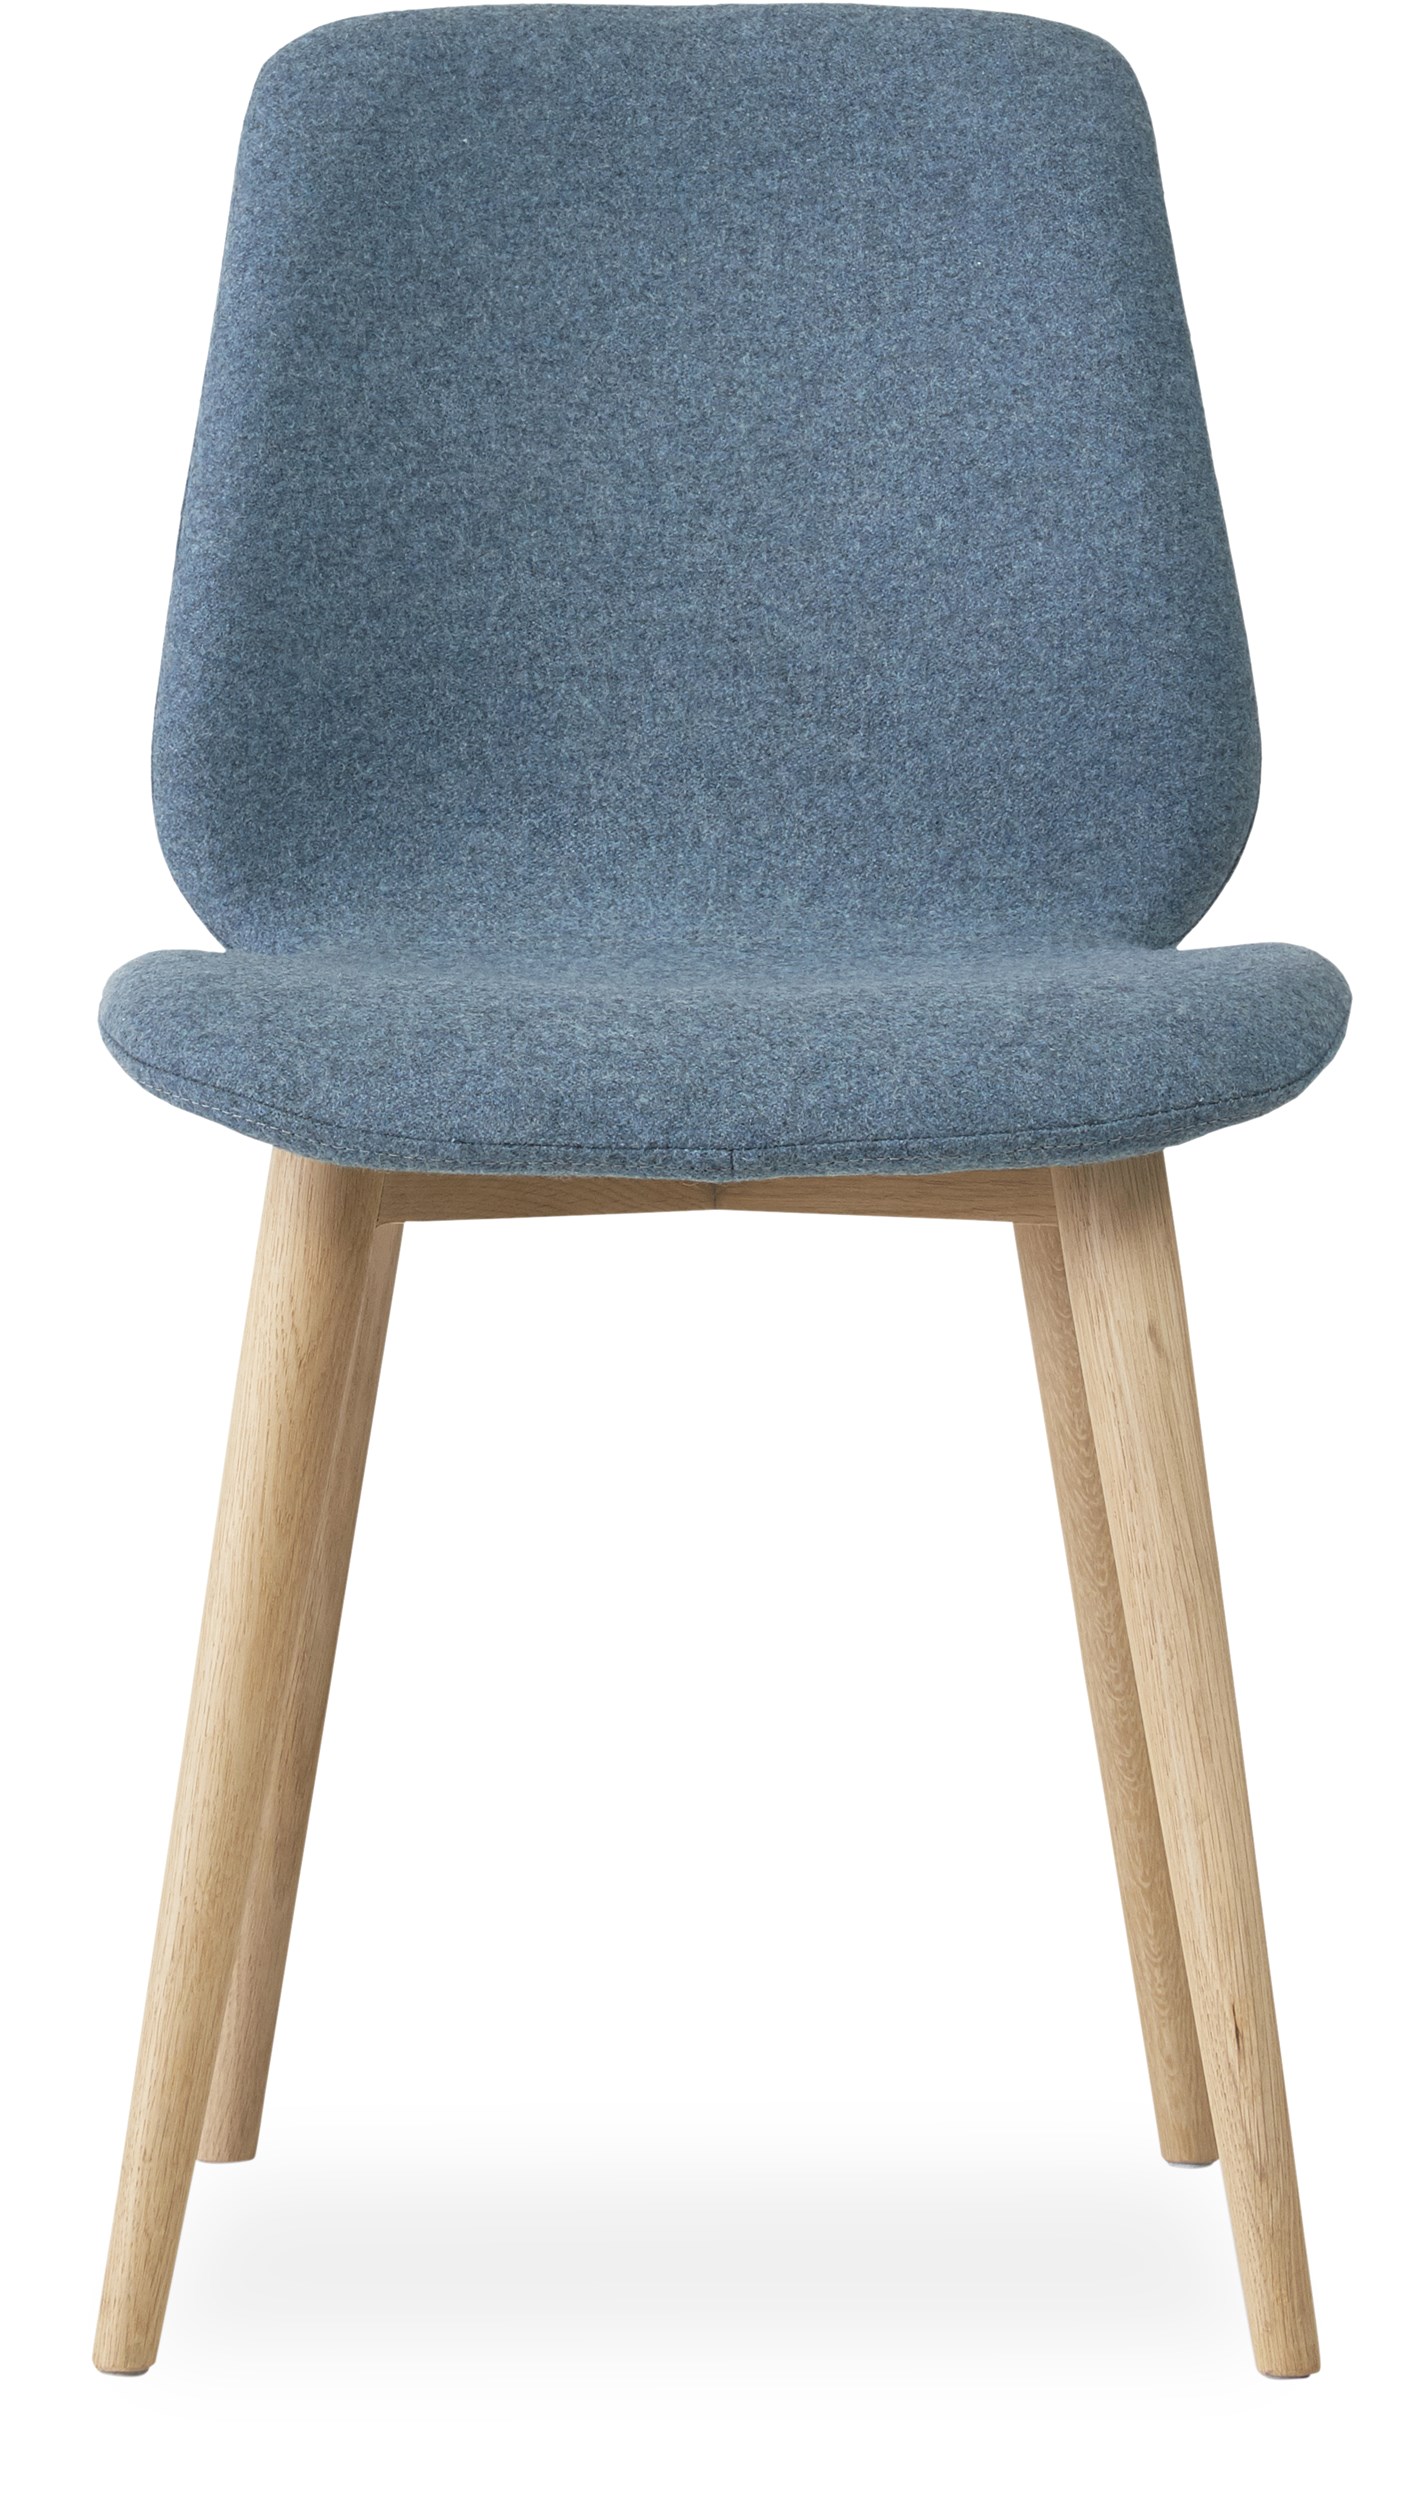 Share matstol - Sits i 28 Dusty blue filt och curveben i vitpigmenterad mattlackad ek